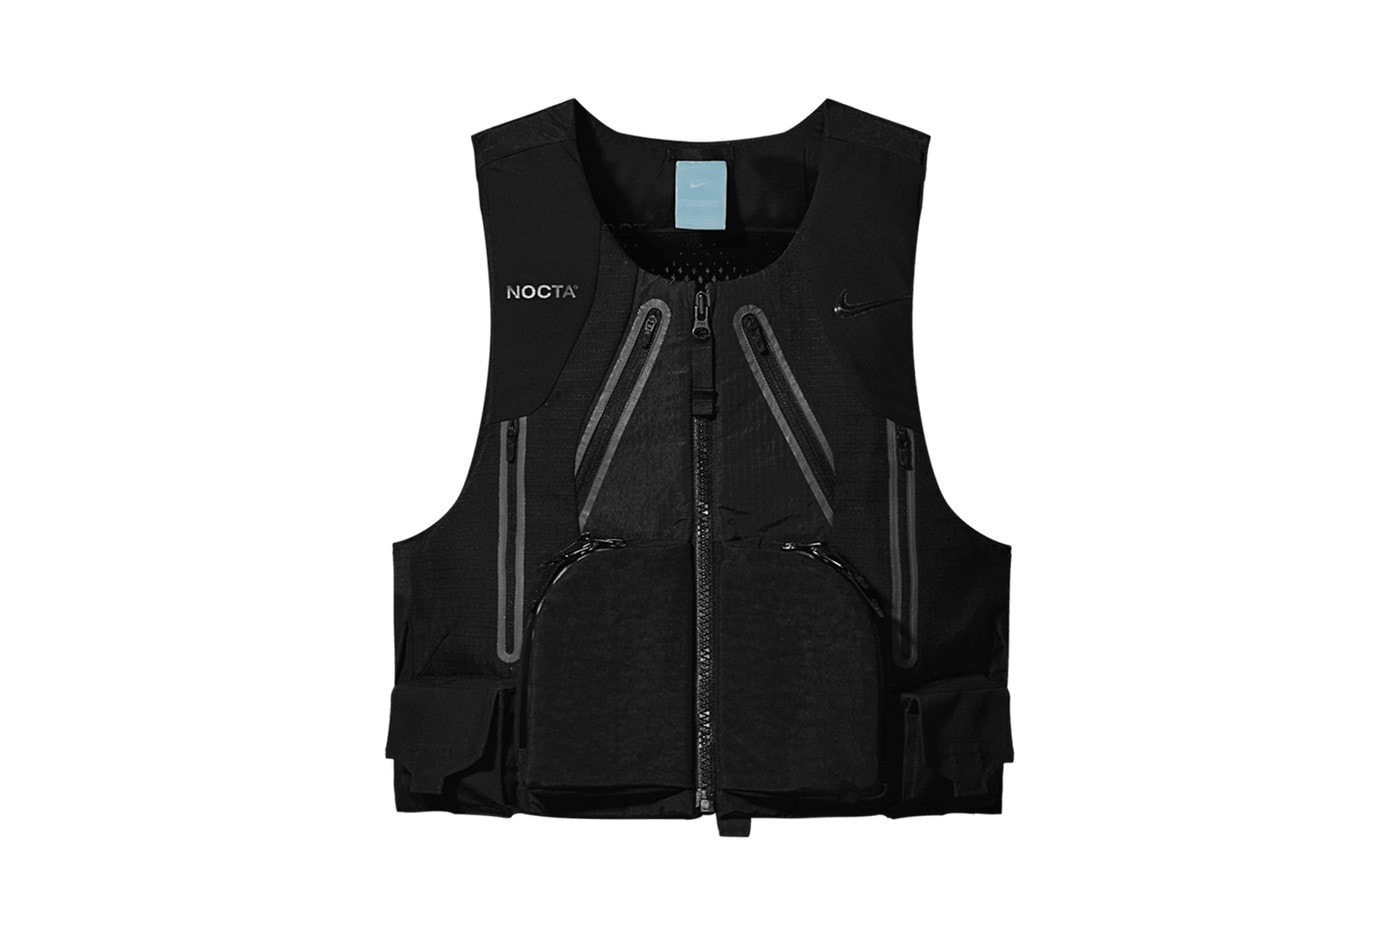 2021년 출시 앞둔 드레이크 x 나이키 ‘녹타 컬렉션’ 추가 제품군 공개, 셸 재킷, 유틸리티 베스트